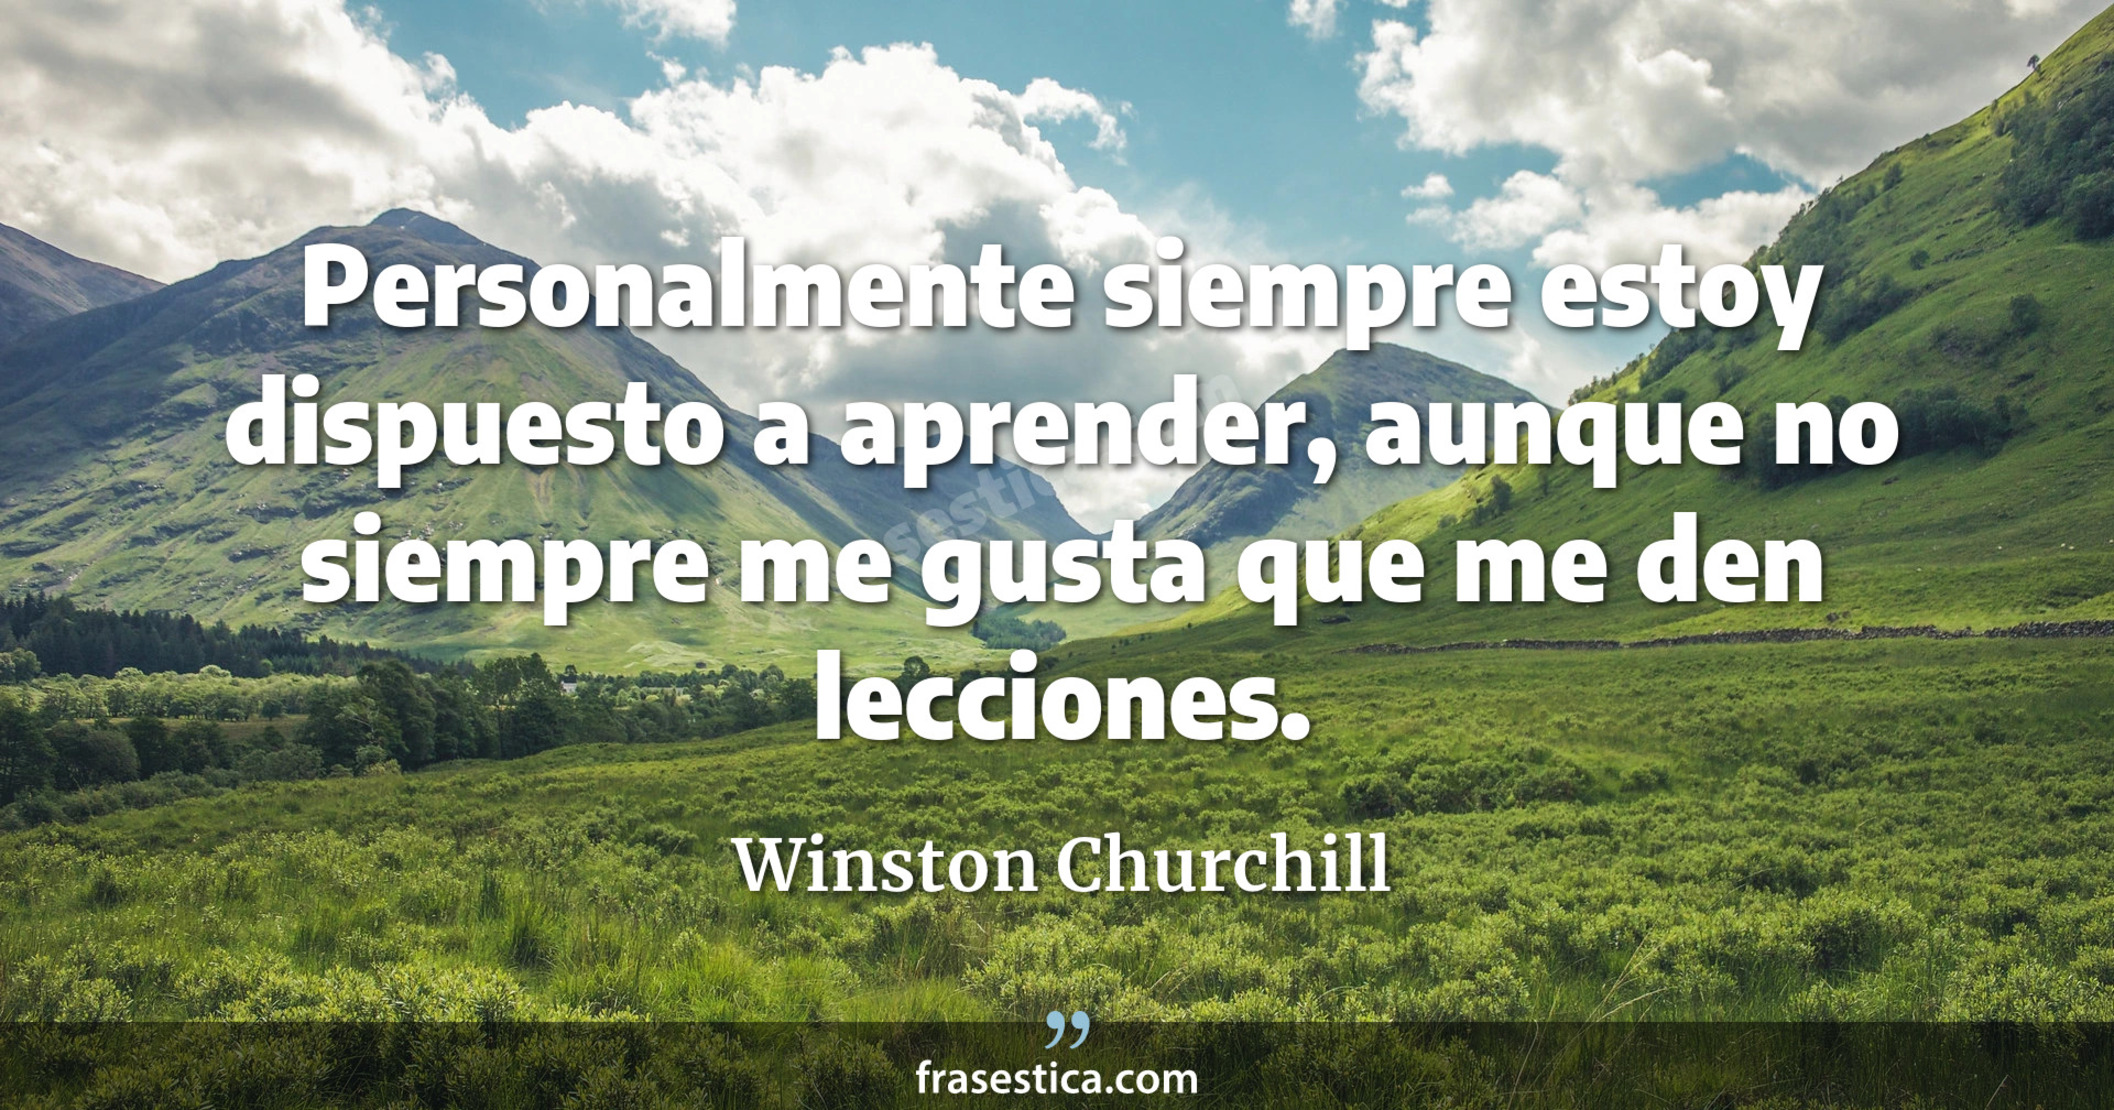 Personalmente siempre estoy dispuesto a aprender, aunque no siempre me gusta que me den lecciones. - Winston Churchill